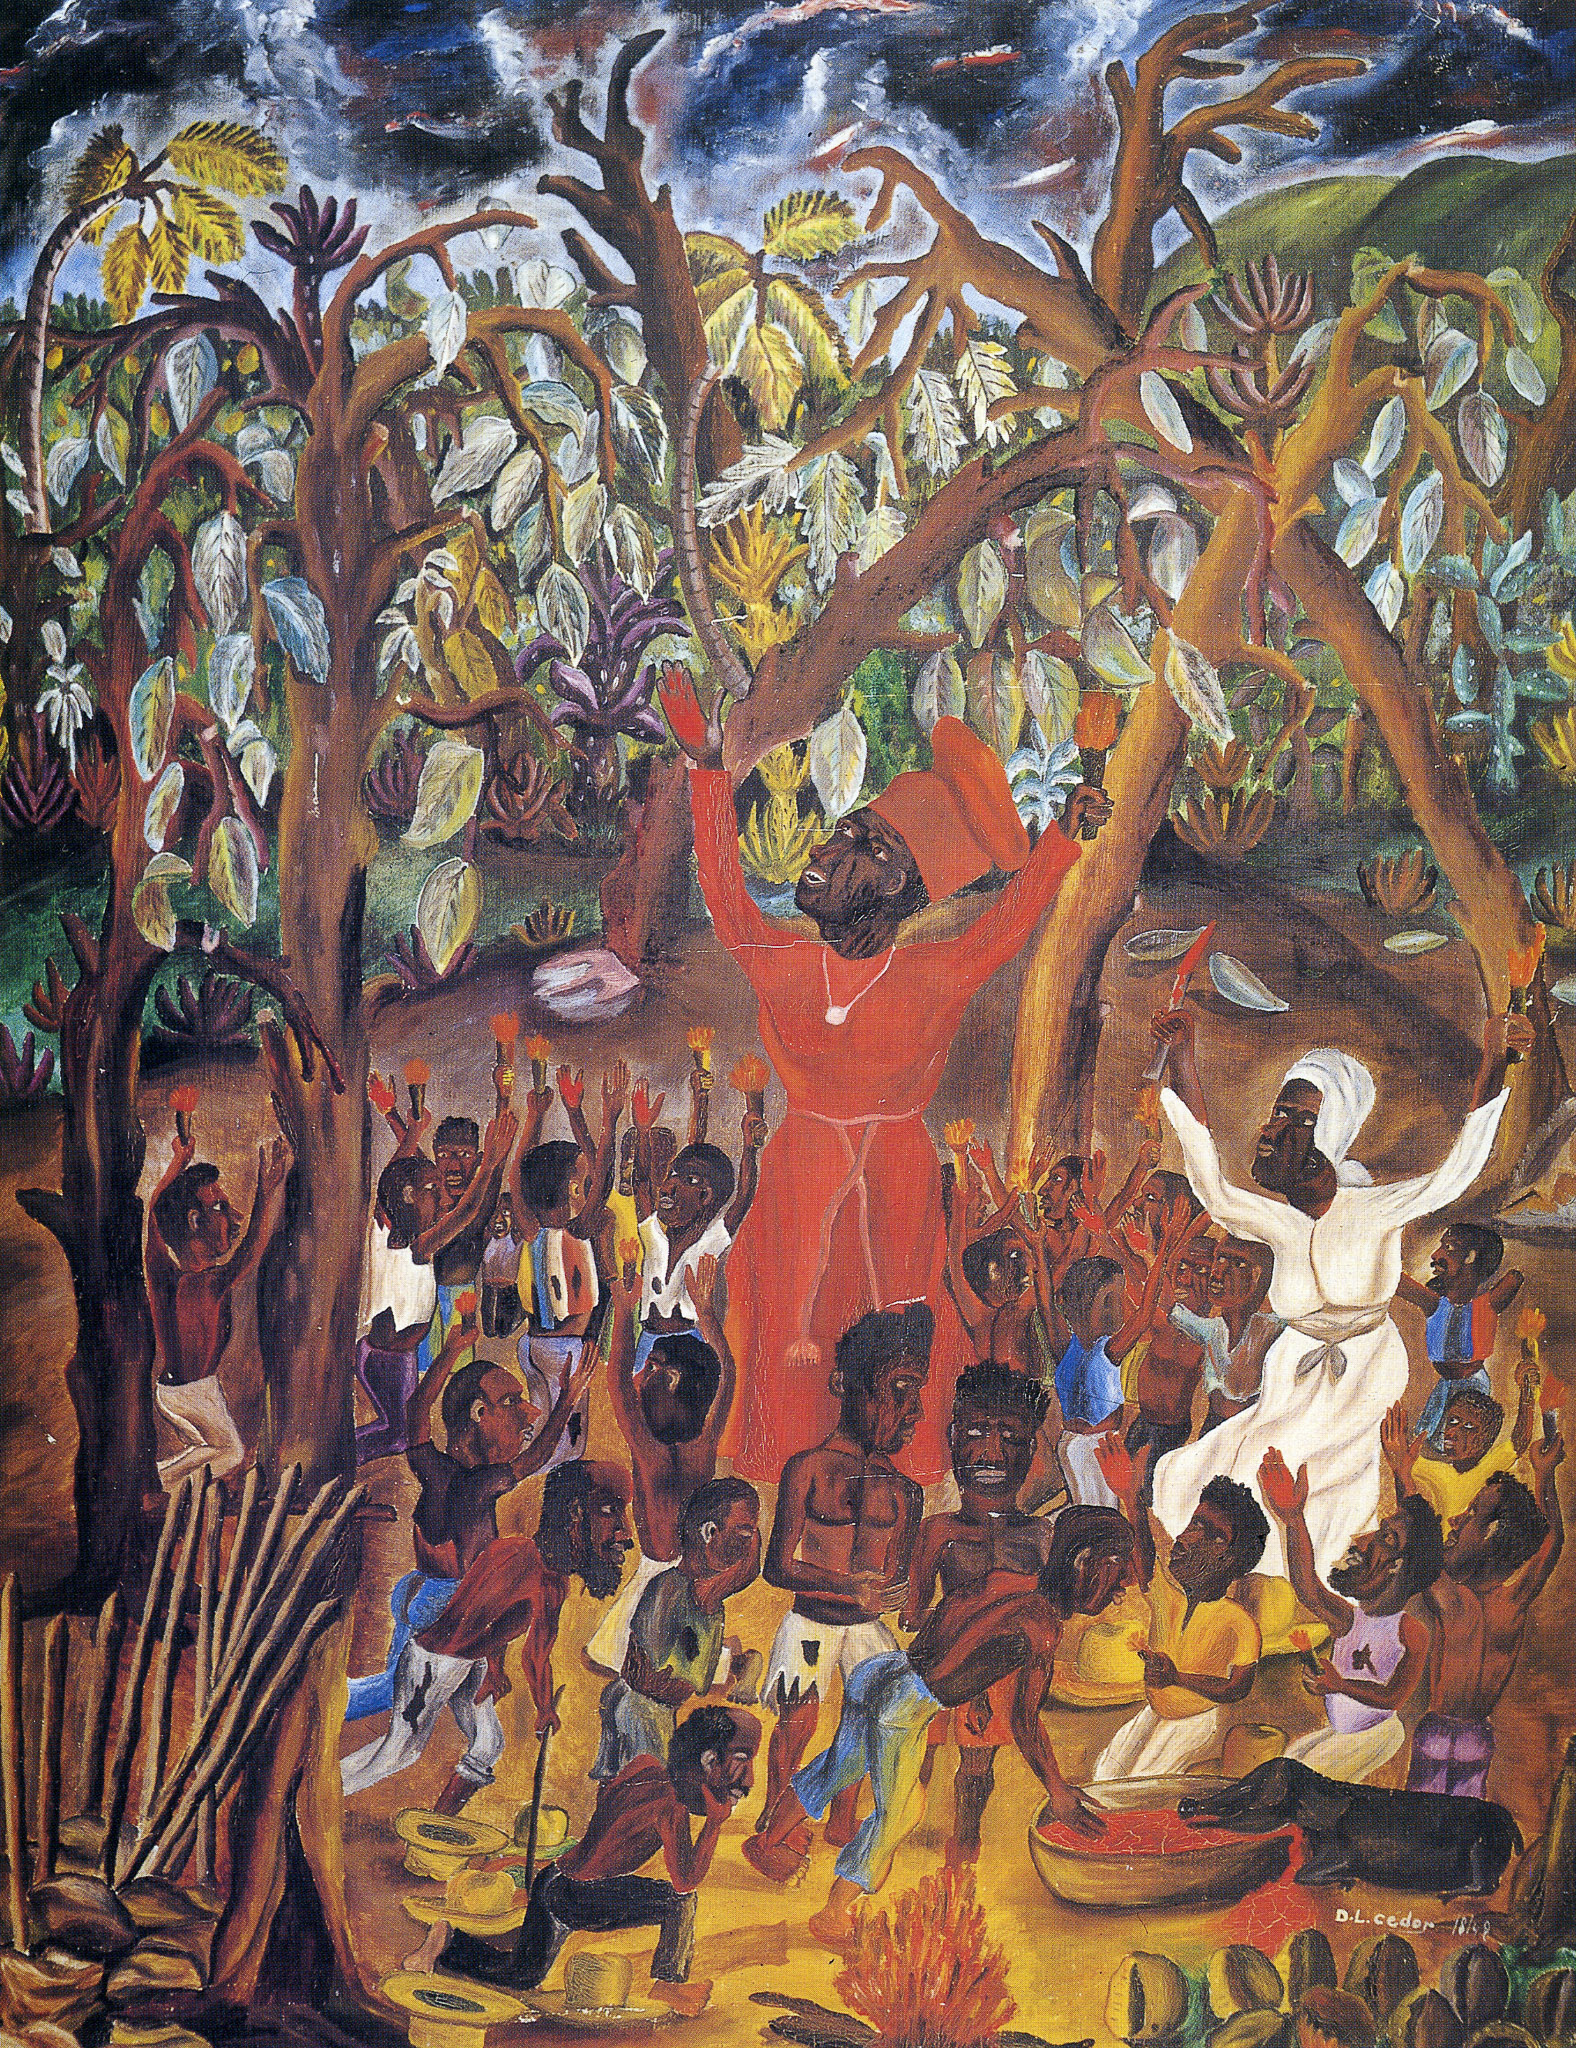  Bois Caiman-1791, 1948